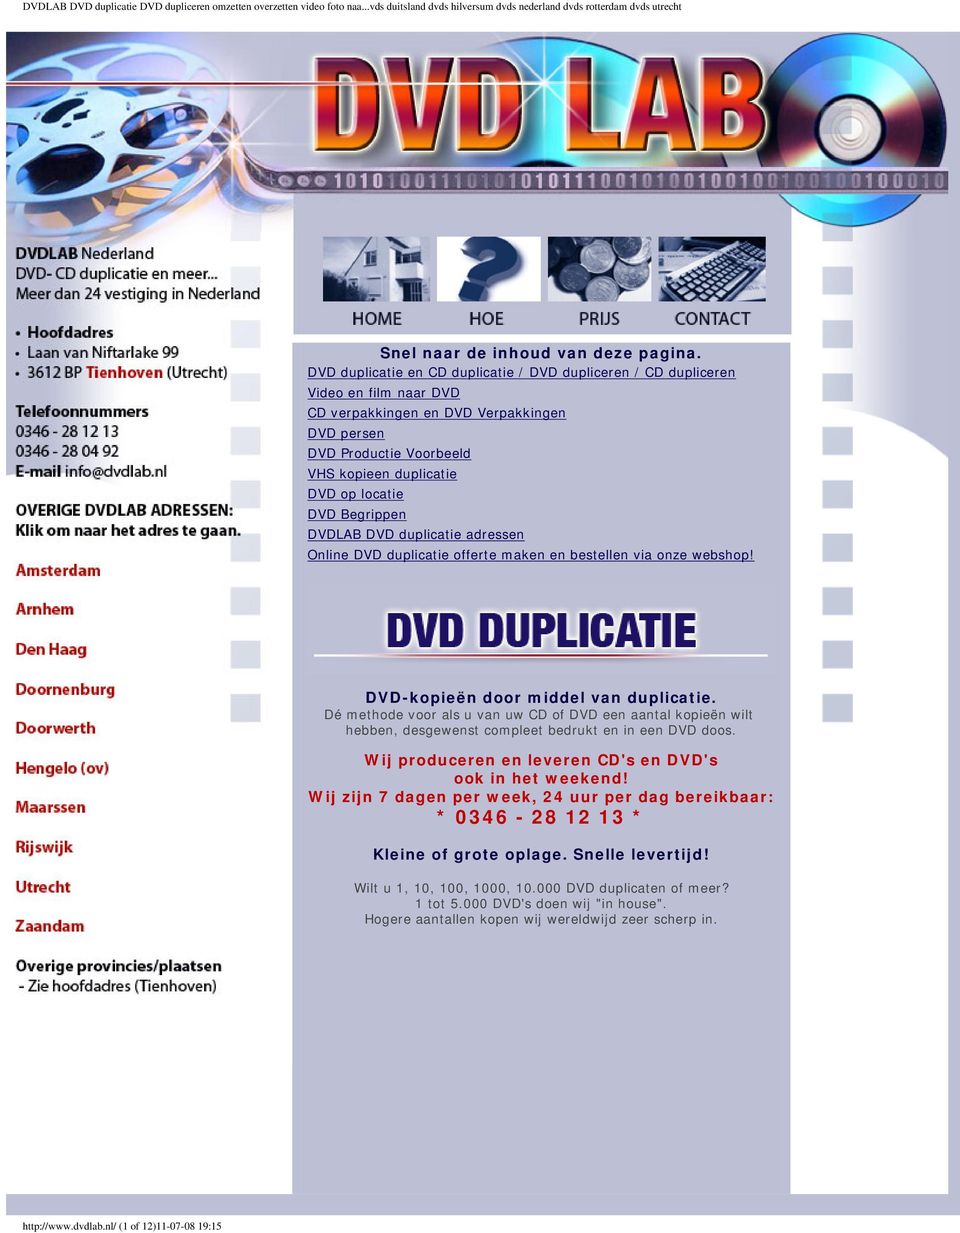 DVD Begrippen DVDLAB DVD duplicatie adressen Online DVD duplicatie offerte maken en bestellen via onze webshop! DVD-kopieën door middel van duplicatie.